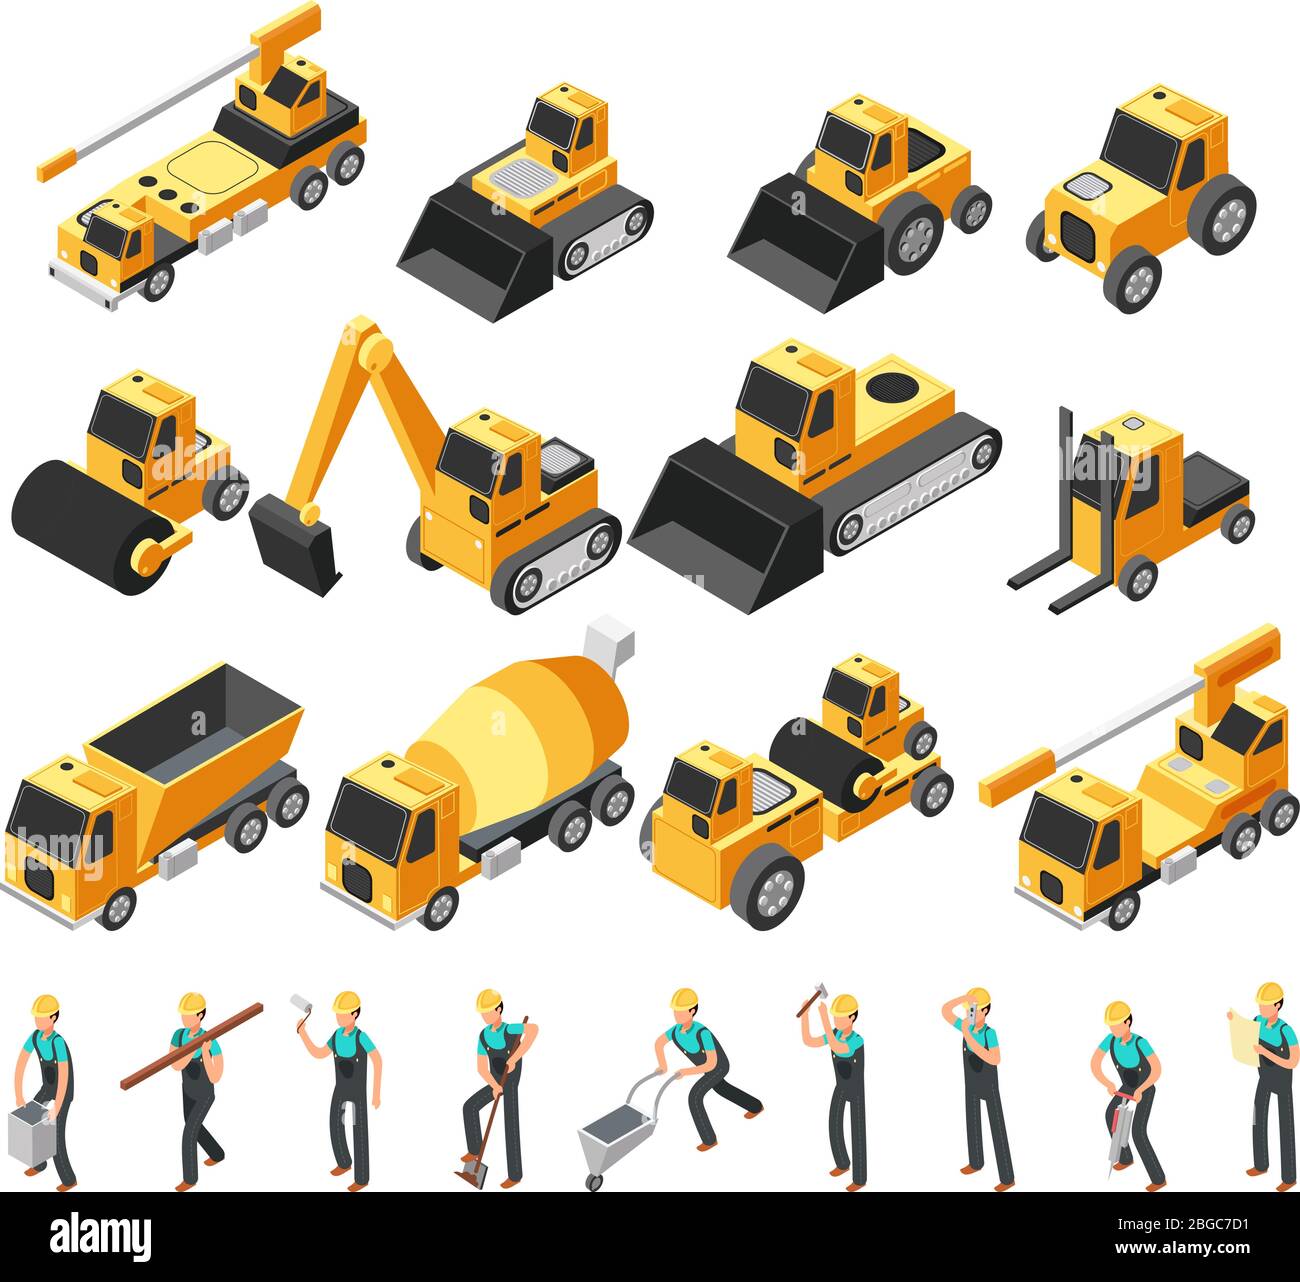 Isometrische Bauarbeiter, Baumaschinen und Ausrüstung 3d-Vektor-Set. Baumaschinen und Planierraupen Maschinen Illustration Stock Vektor